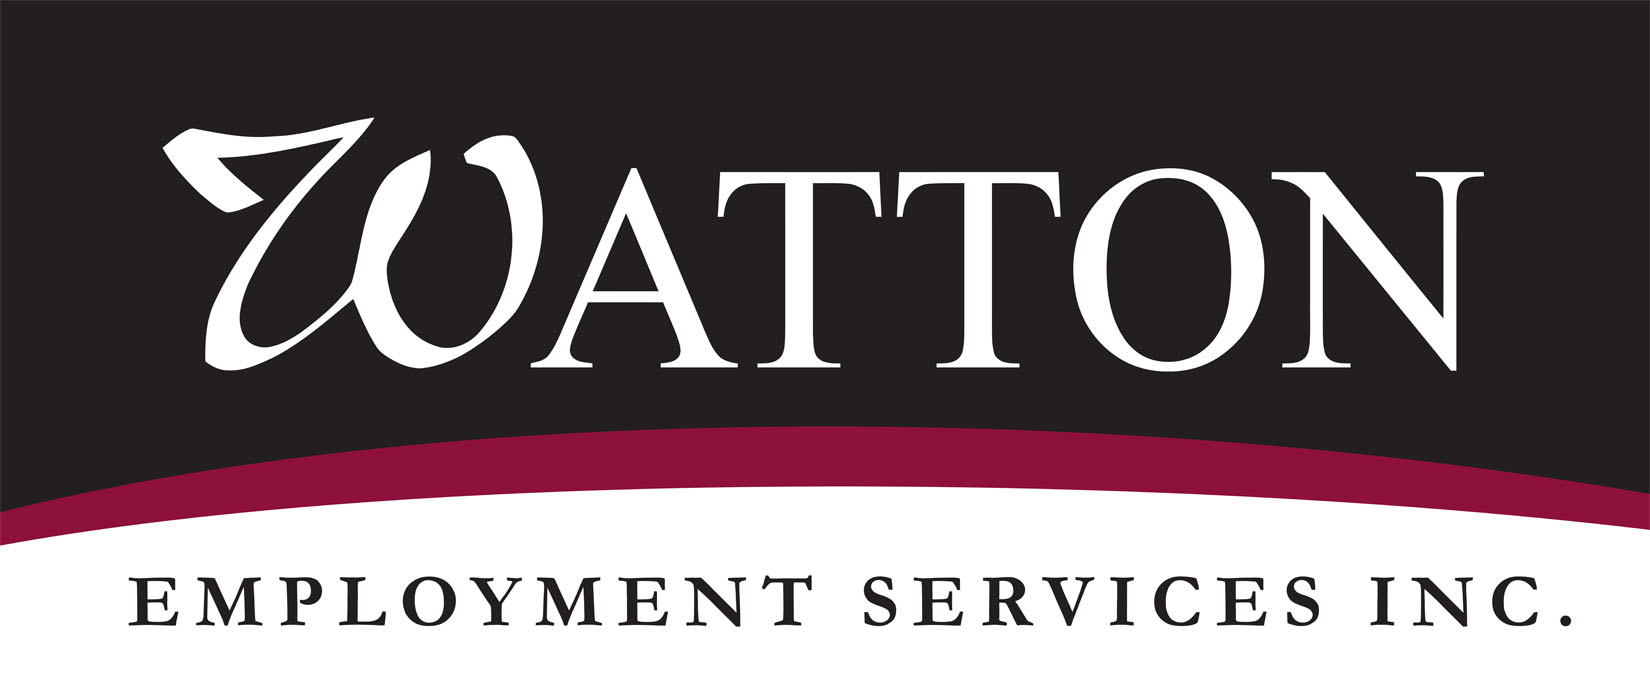 Watton Employment Service Image 1